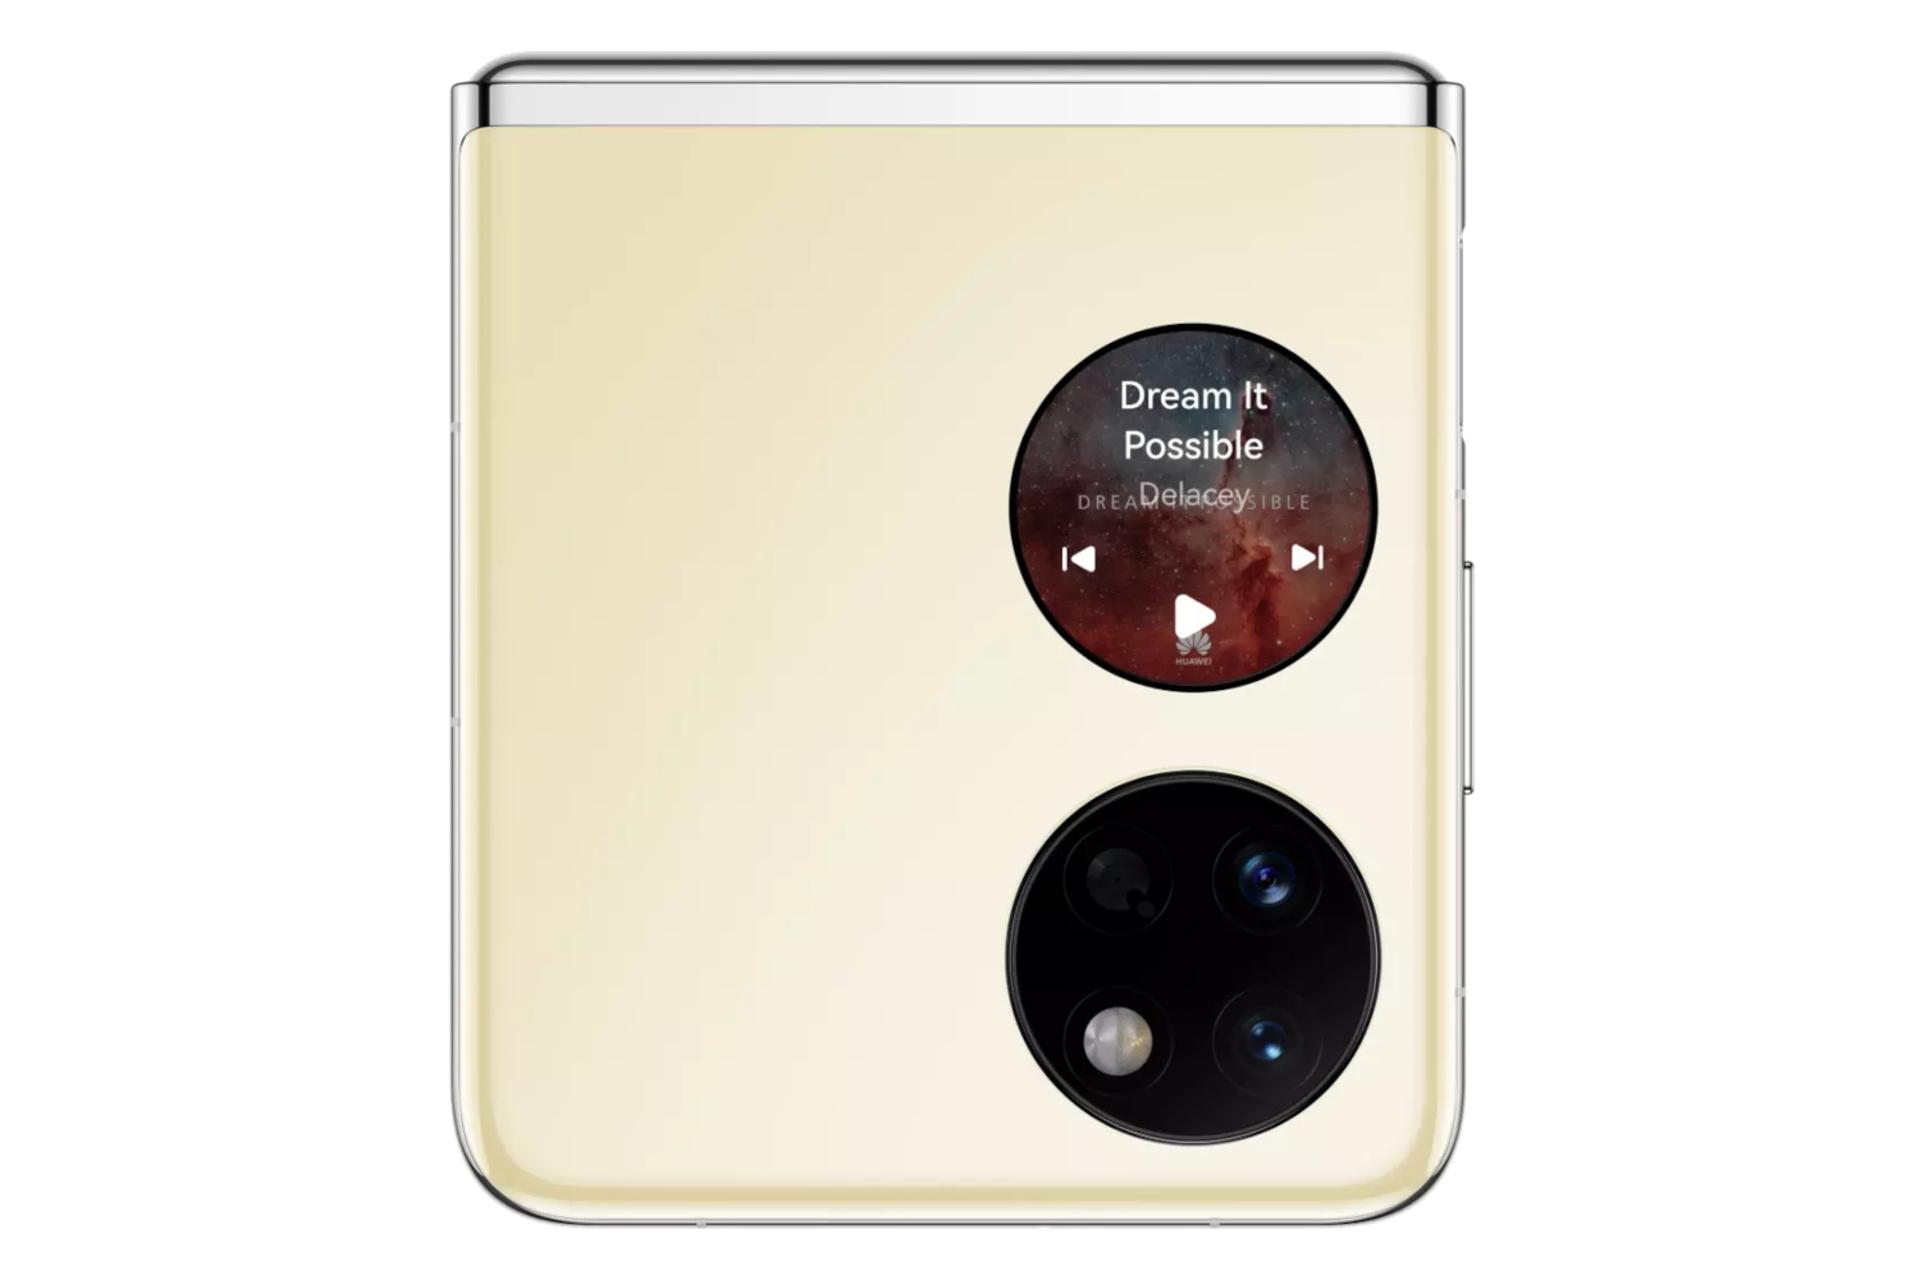 پنل پشت گوشی موبایل پاکت اس هواوی / Huawei Pocket S طلایی